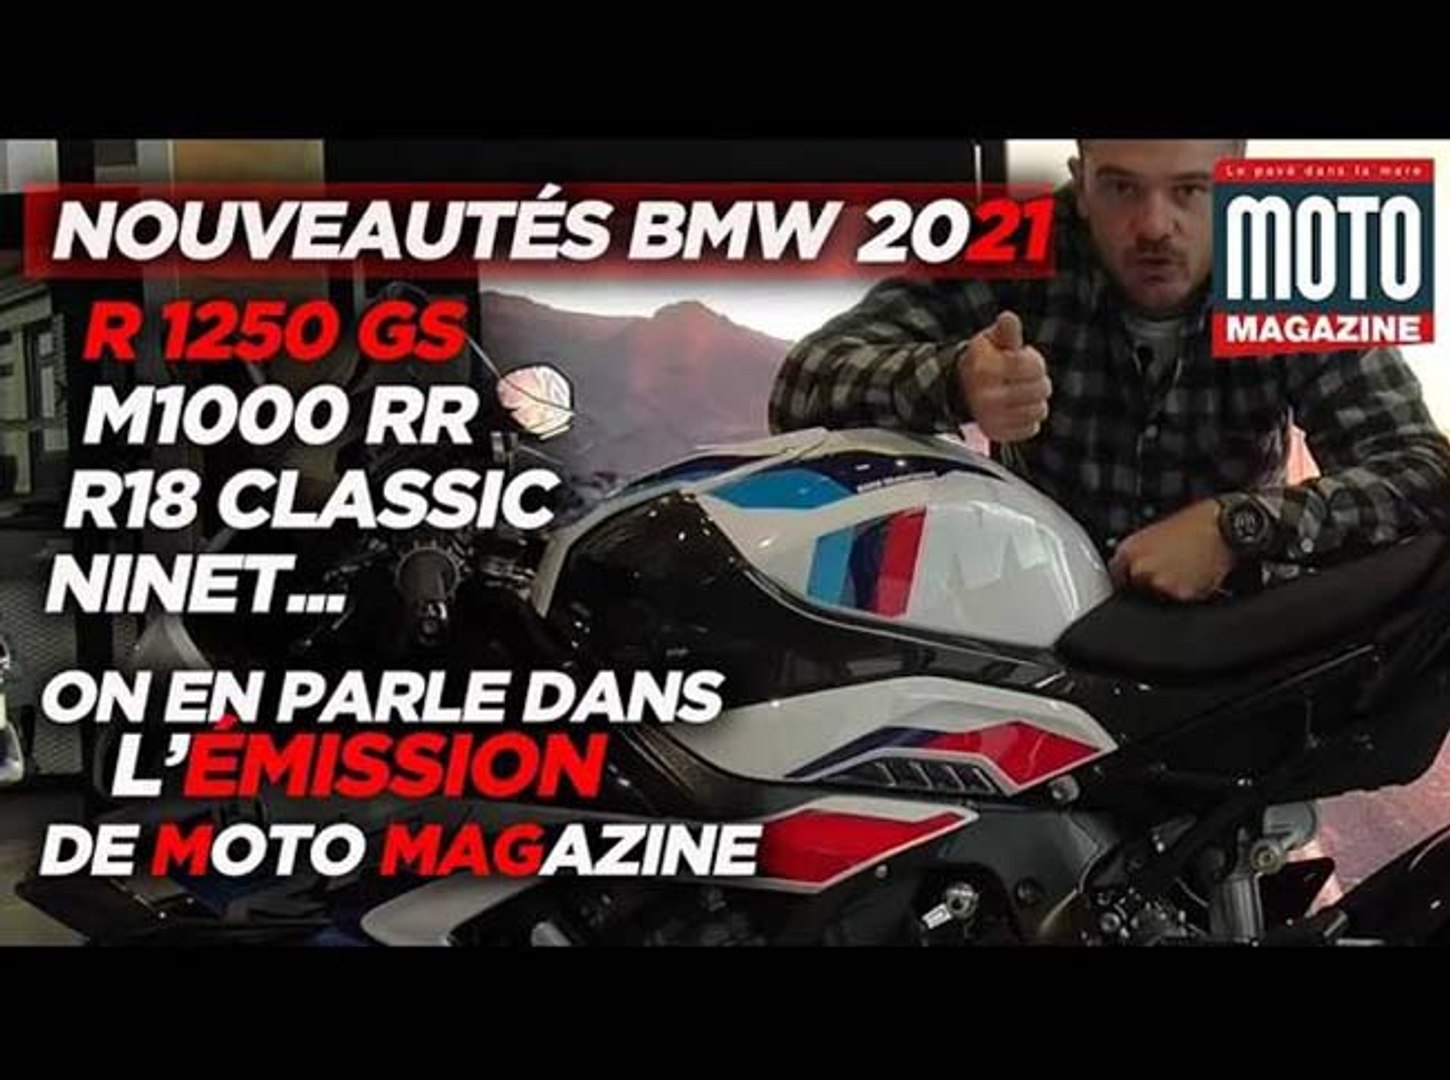 BMW NOUVEAUTÉS MOTO 2021 - On en parle dans l'Émission de Moto Magazine -  Vidéo Dailymotion